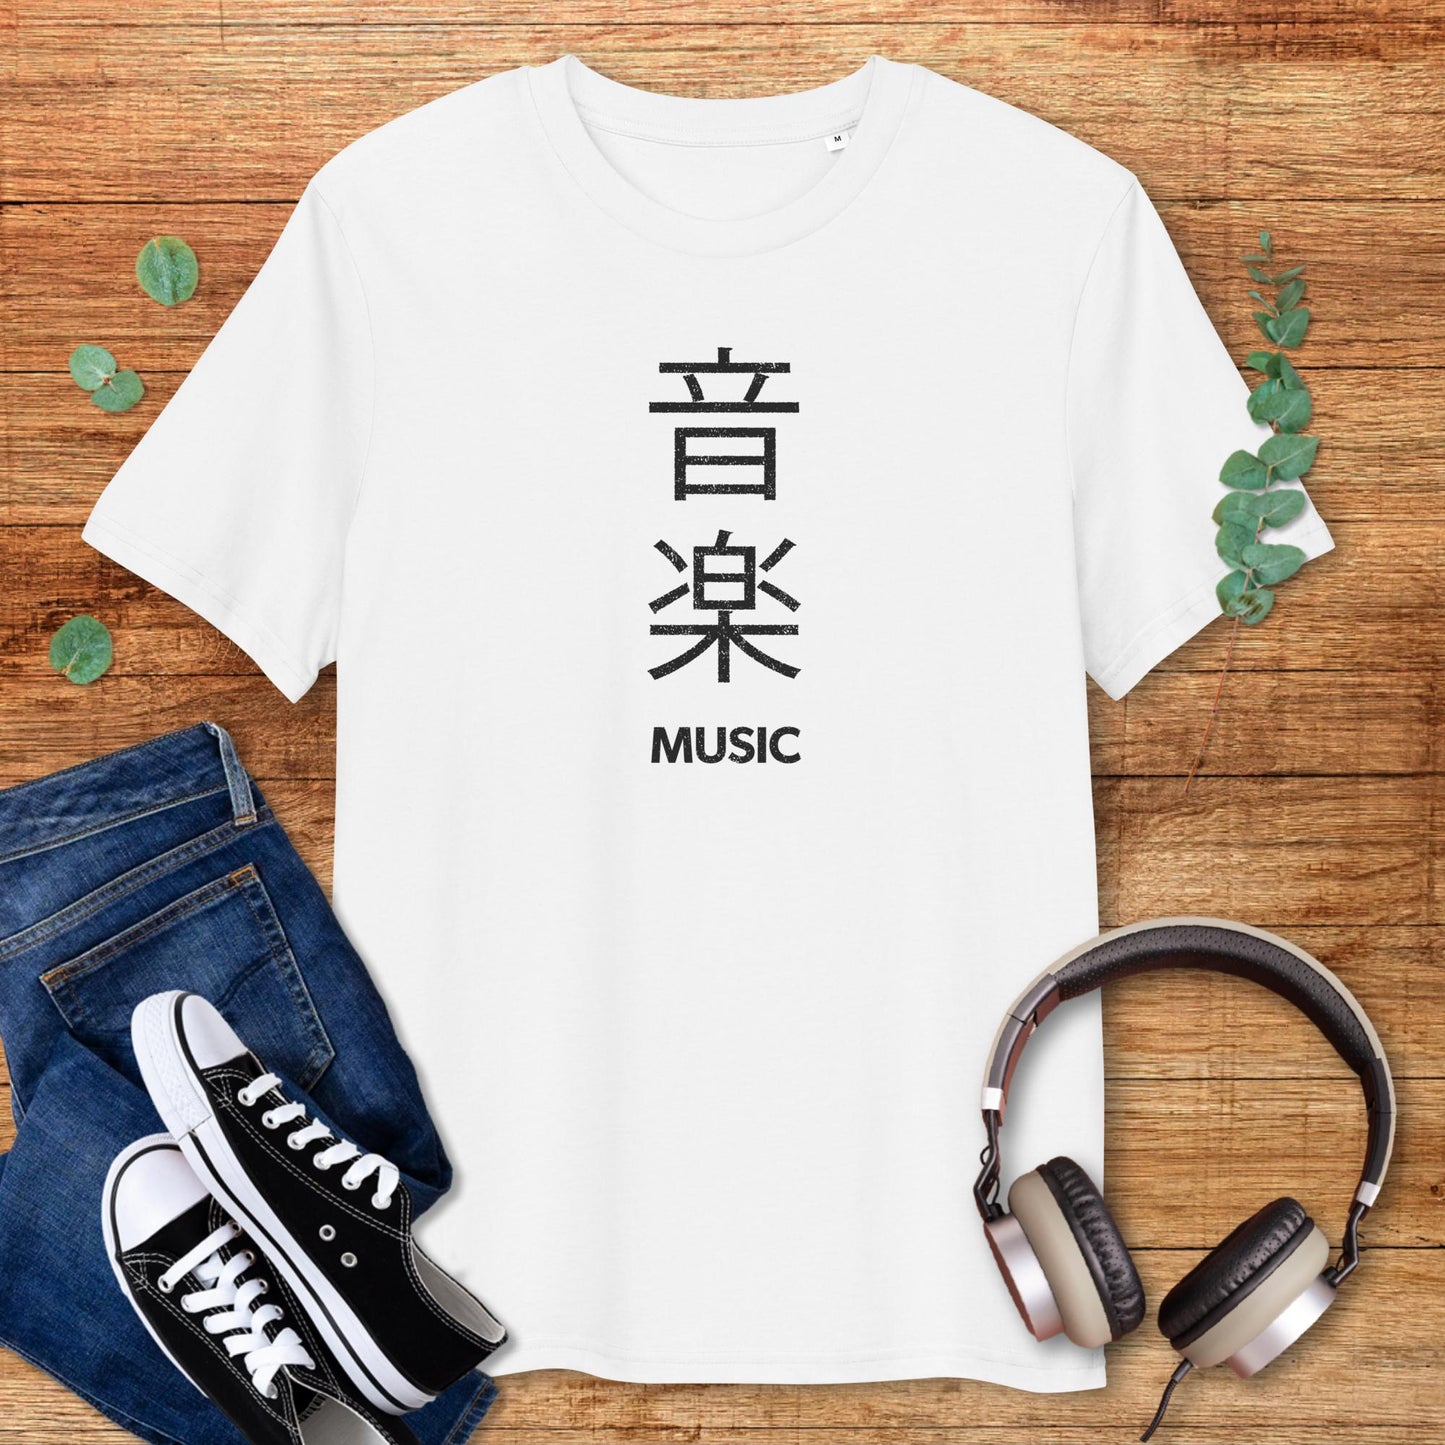 Music in Japanese [V2]